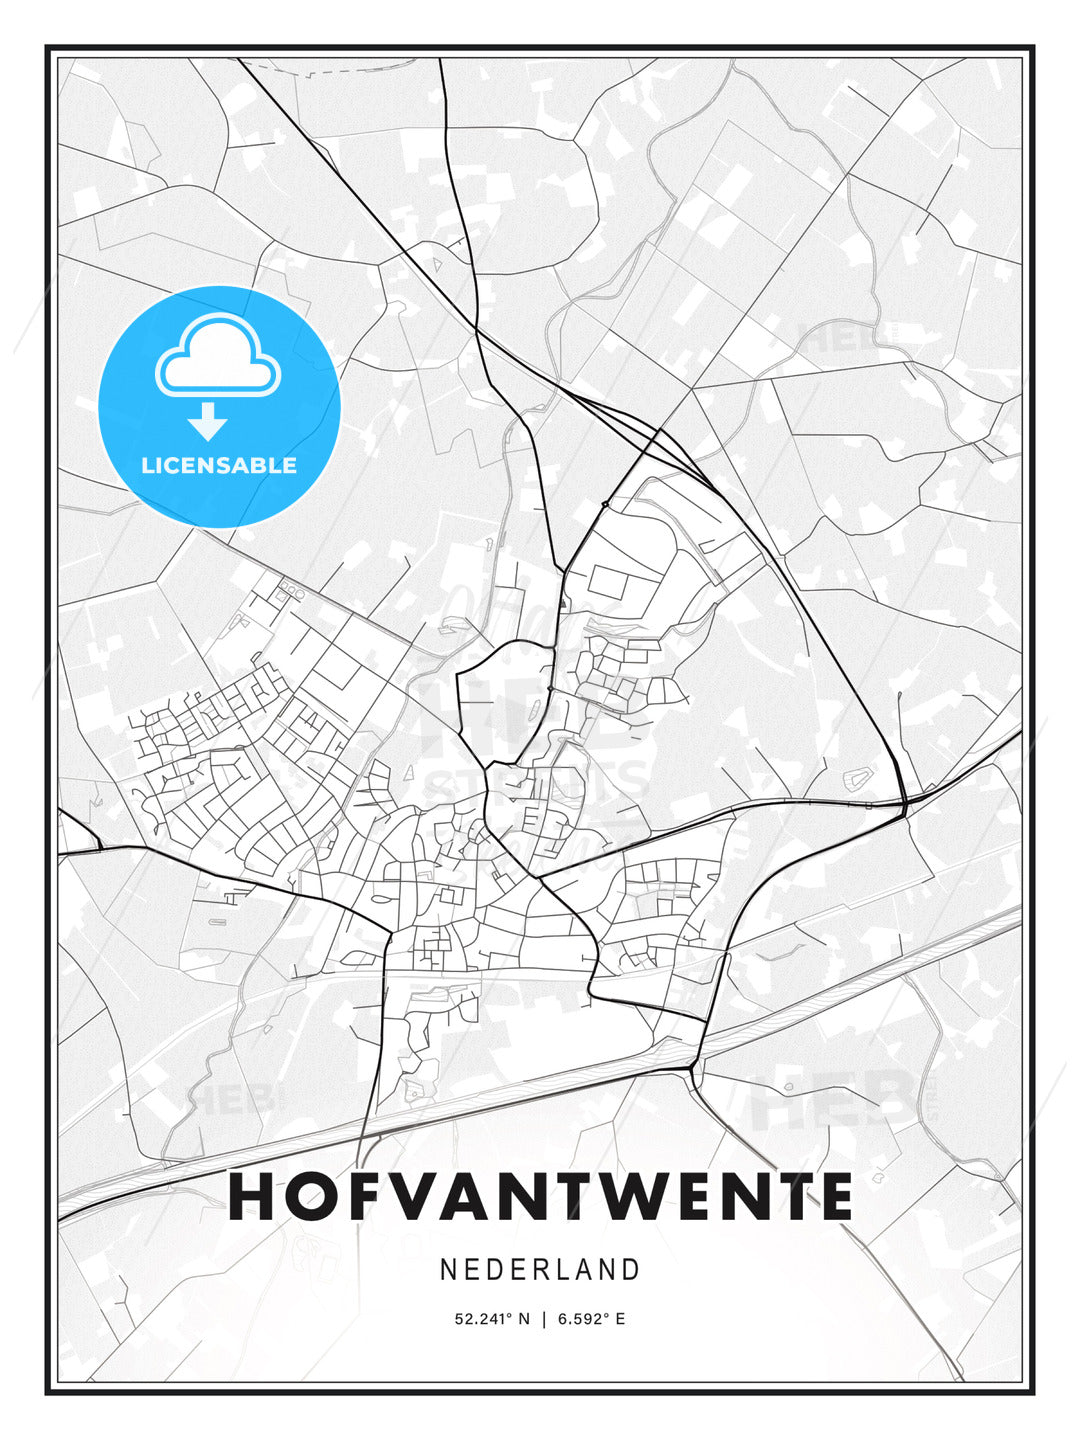 HOFVANTWENTE / Hof van Twente, Netherlands, Modern Print Template in Various Formats - HEBSTREITS Sketches